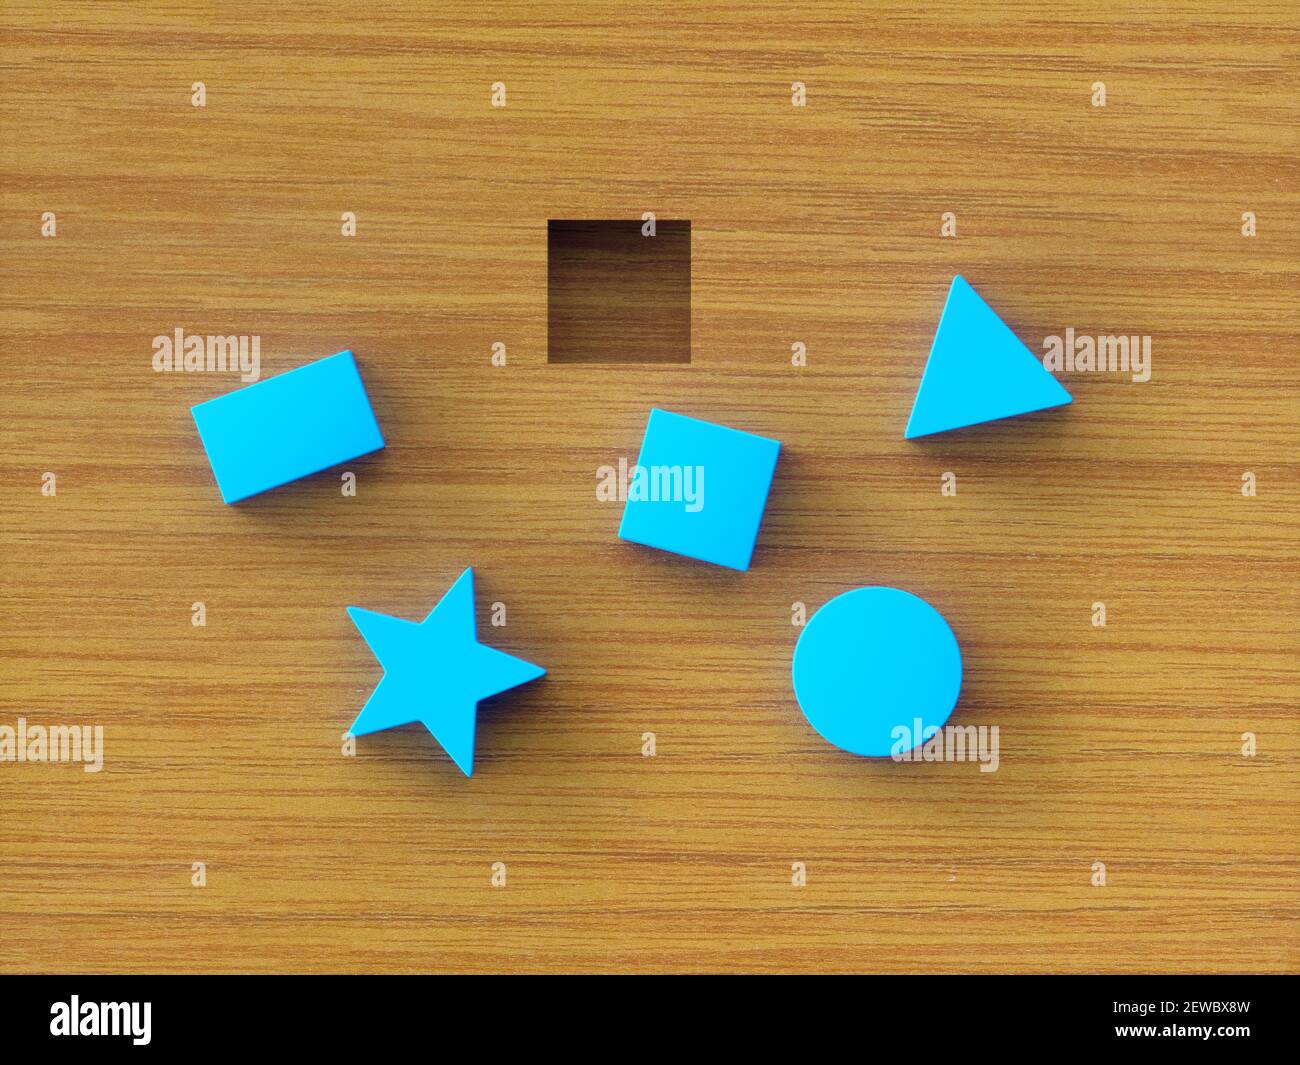 Blocchi da costruzione blu assortiti su tavolo di legno. Immagine concettuale del giocattolo educativo e test psicologico. Foto Stock